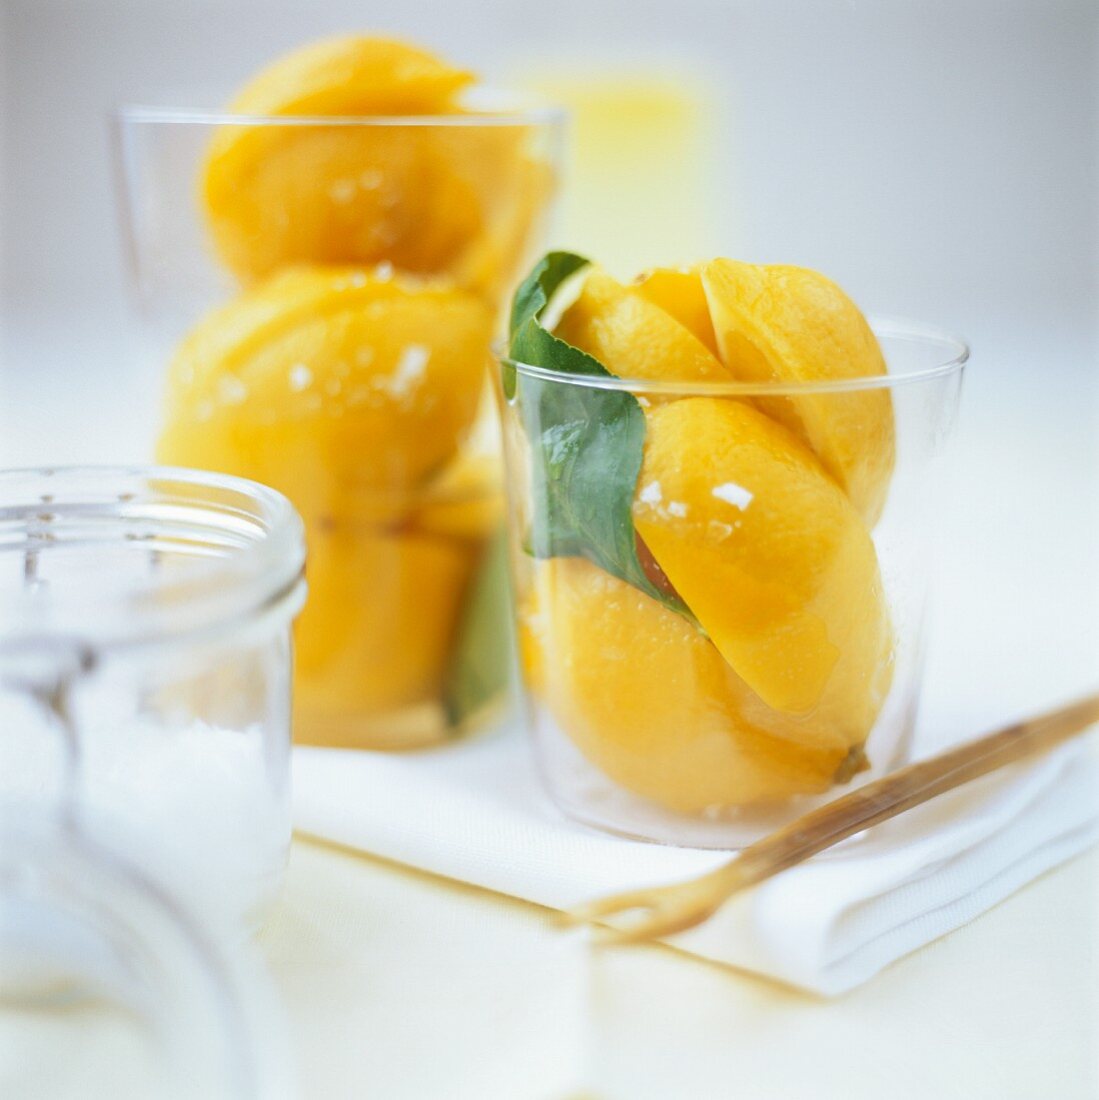 Pickled lemons in jars